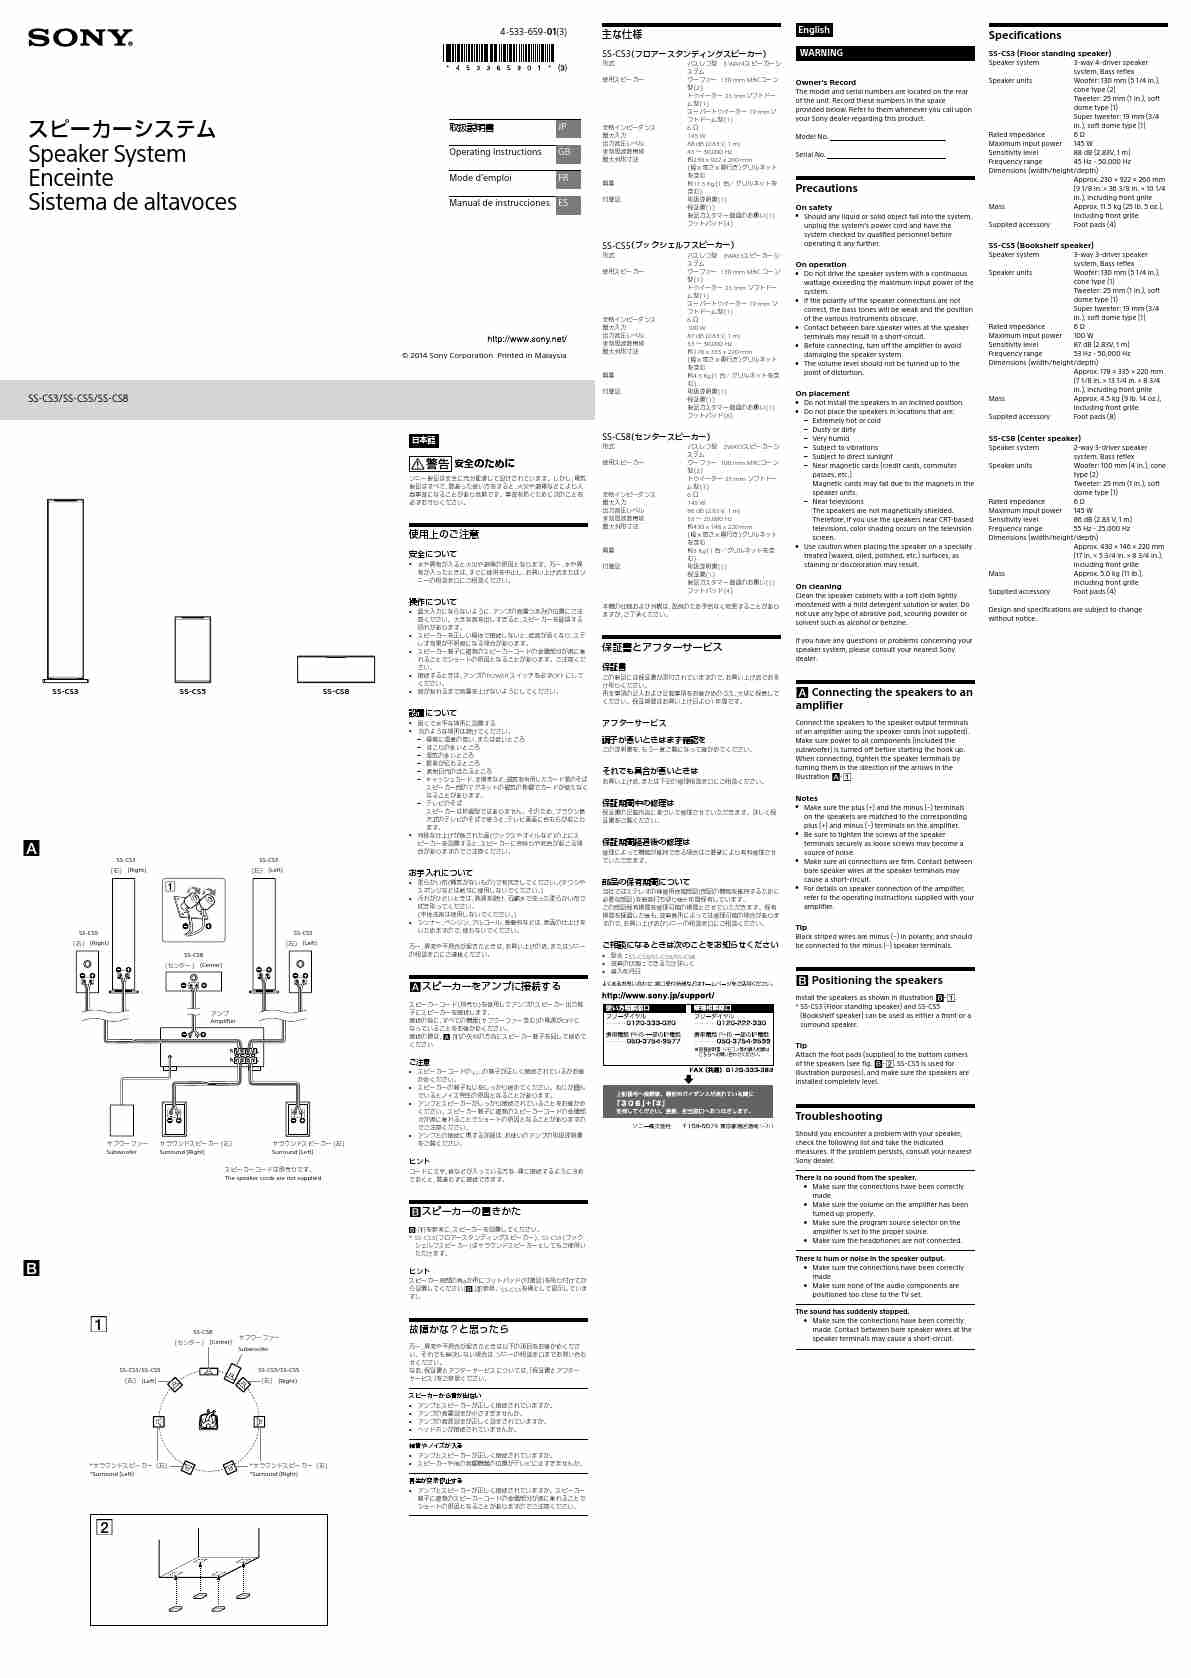 SONY SS-CS3-page_pdf